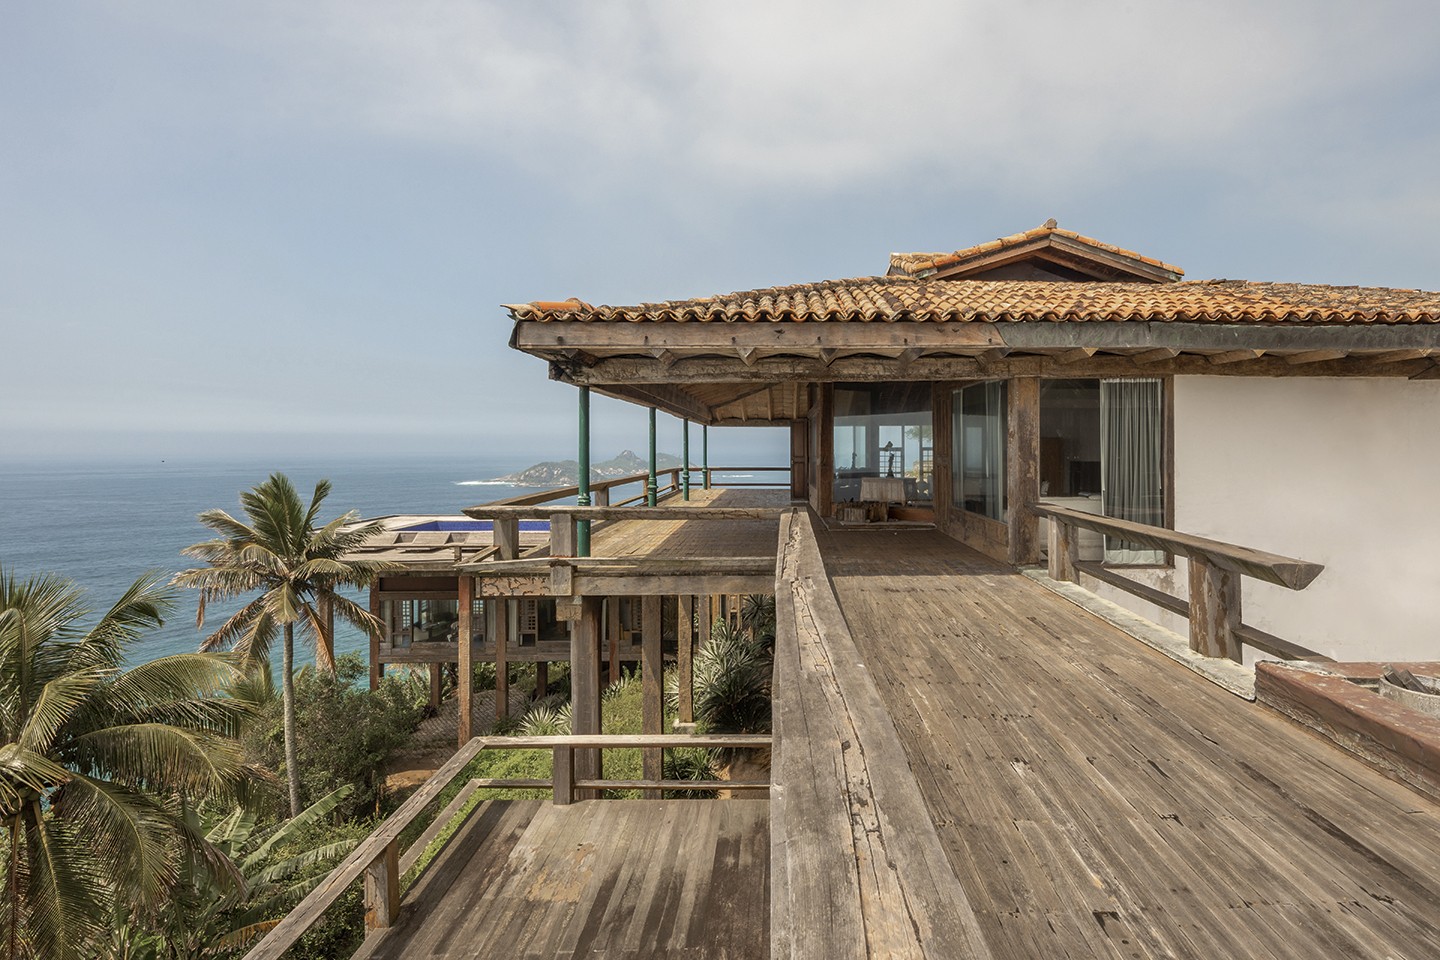 Casa Cuca: residência projetada por José Zanine Caldas paira sobre o mar (Foto: André Nazareth/divulgação)